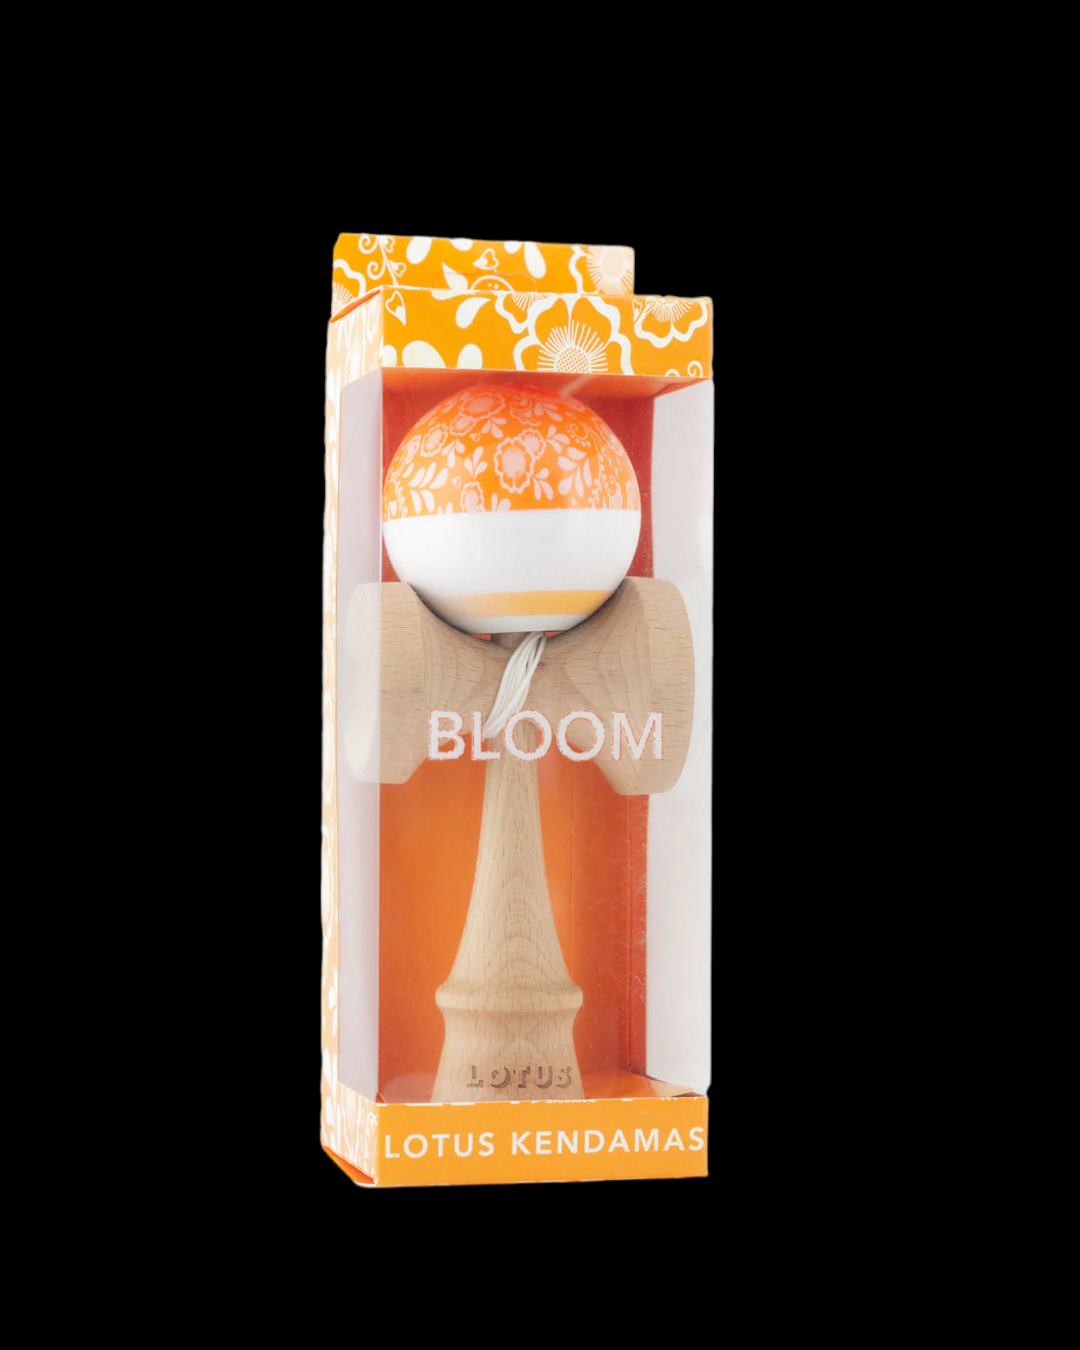 Bloom - Orange Kendama Lotus Kendama   